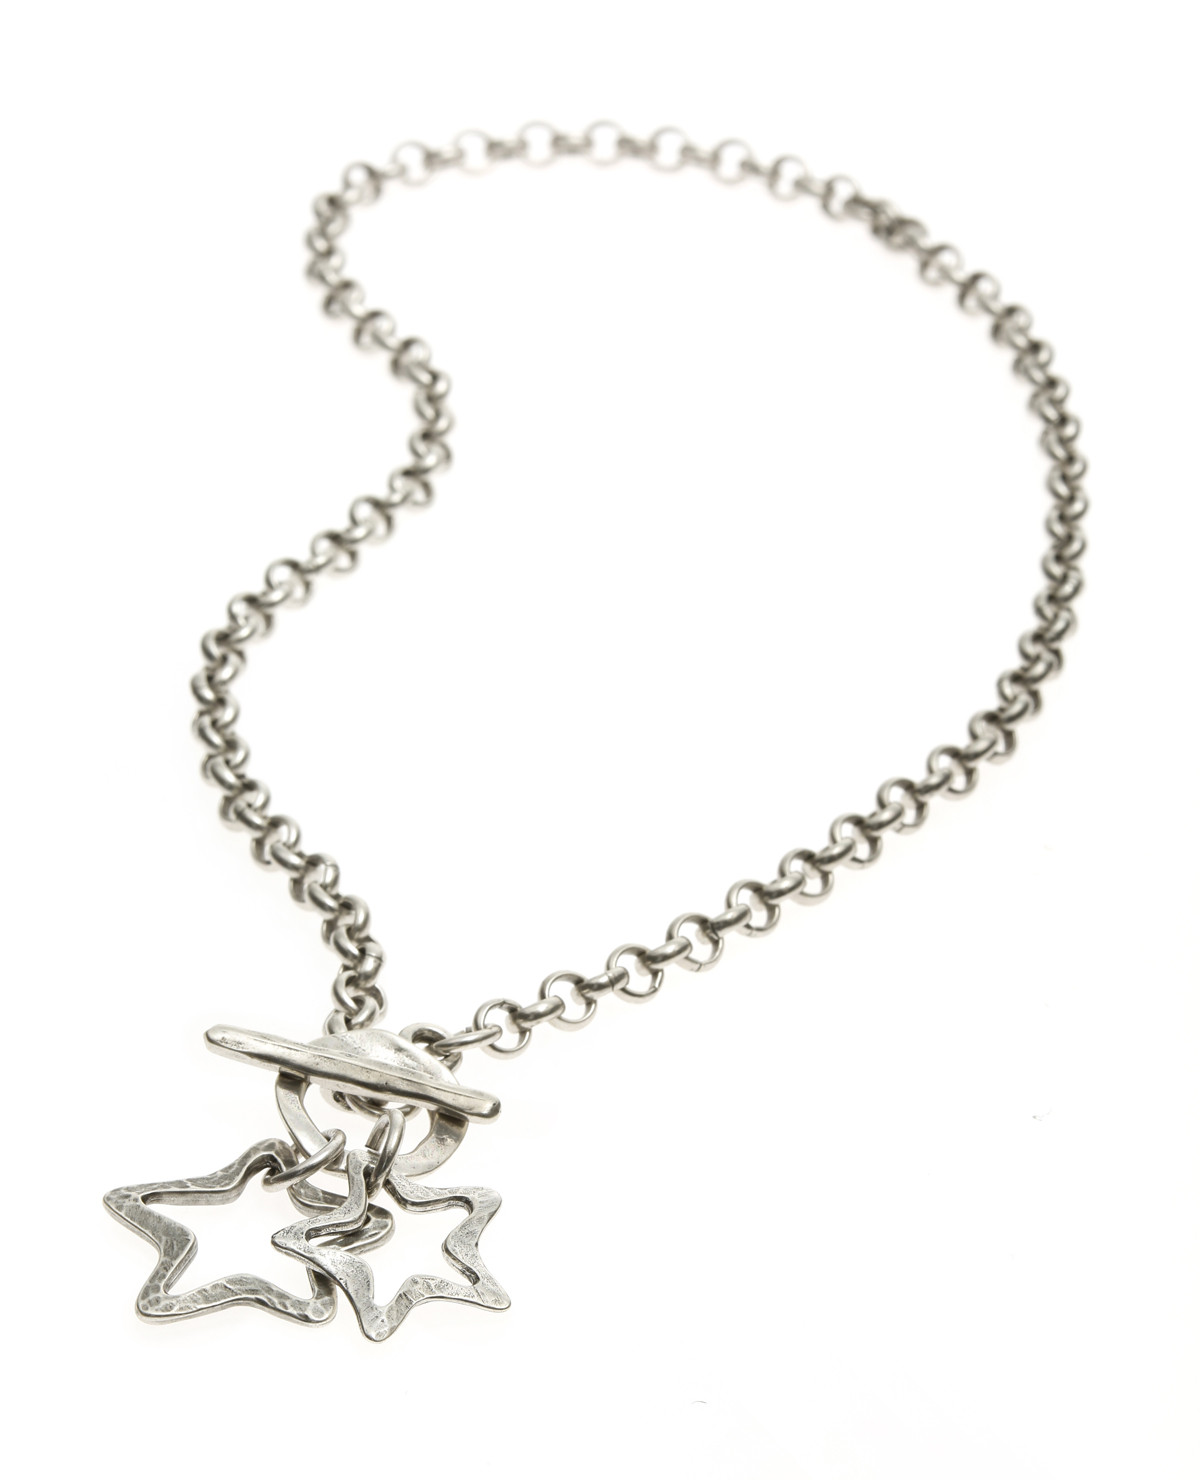 Danon Jewellery Silver Stars Necklace - Lizzielane.com